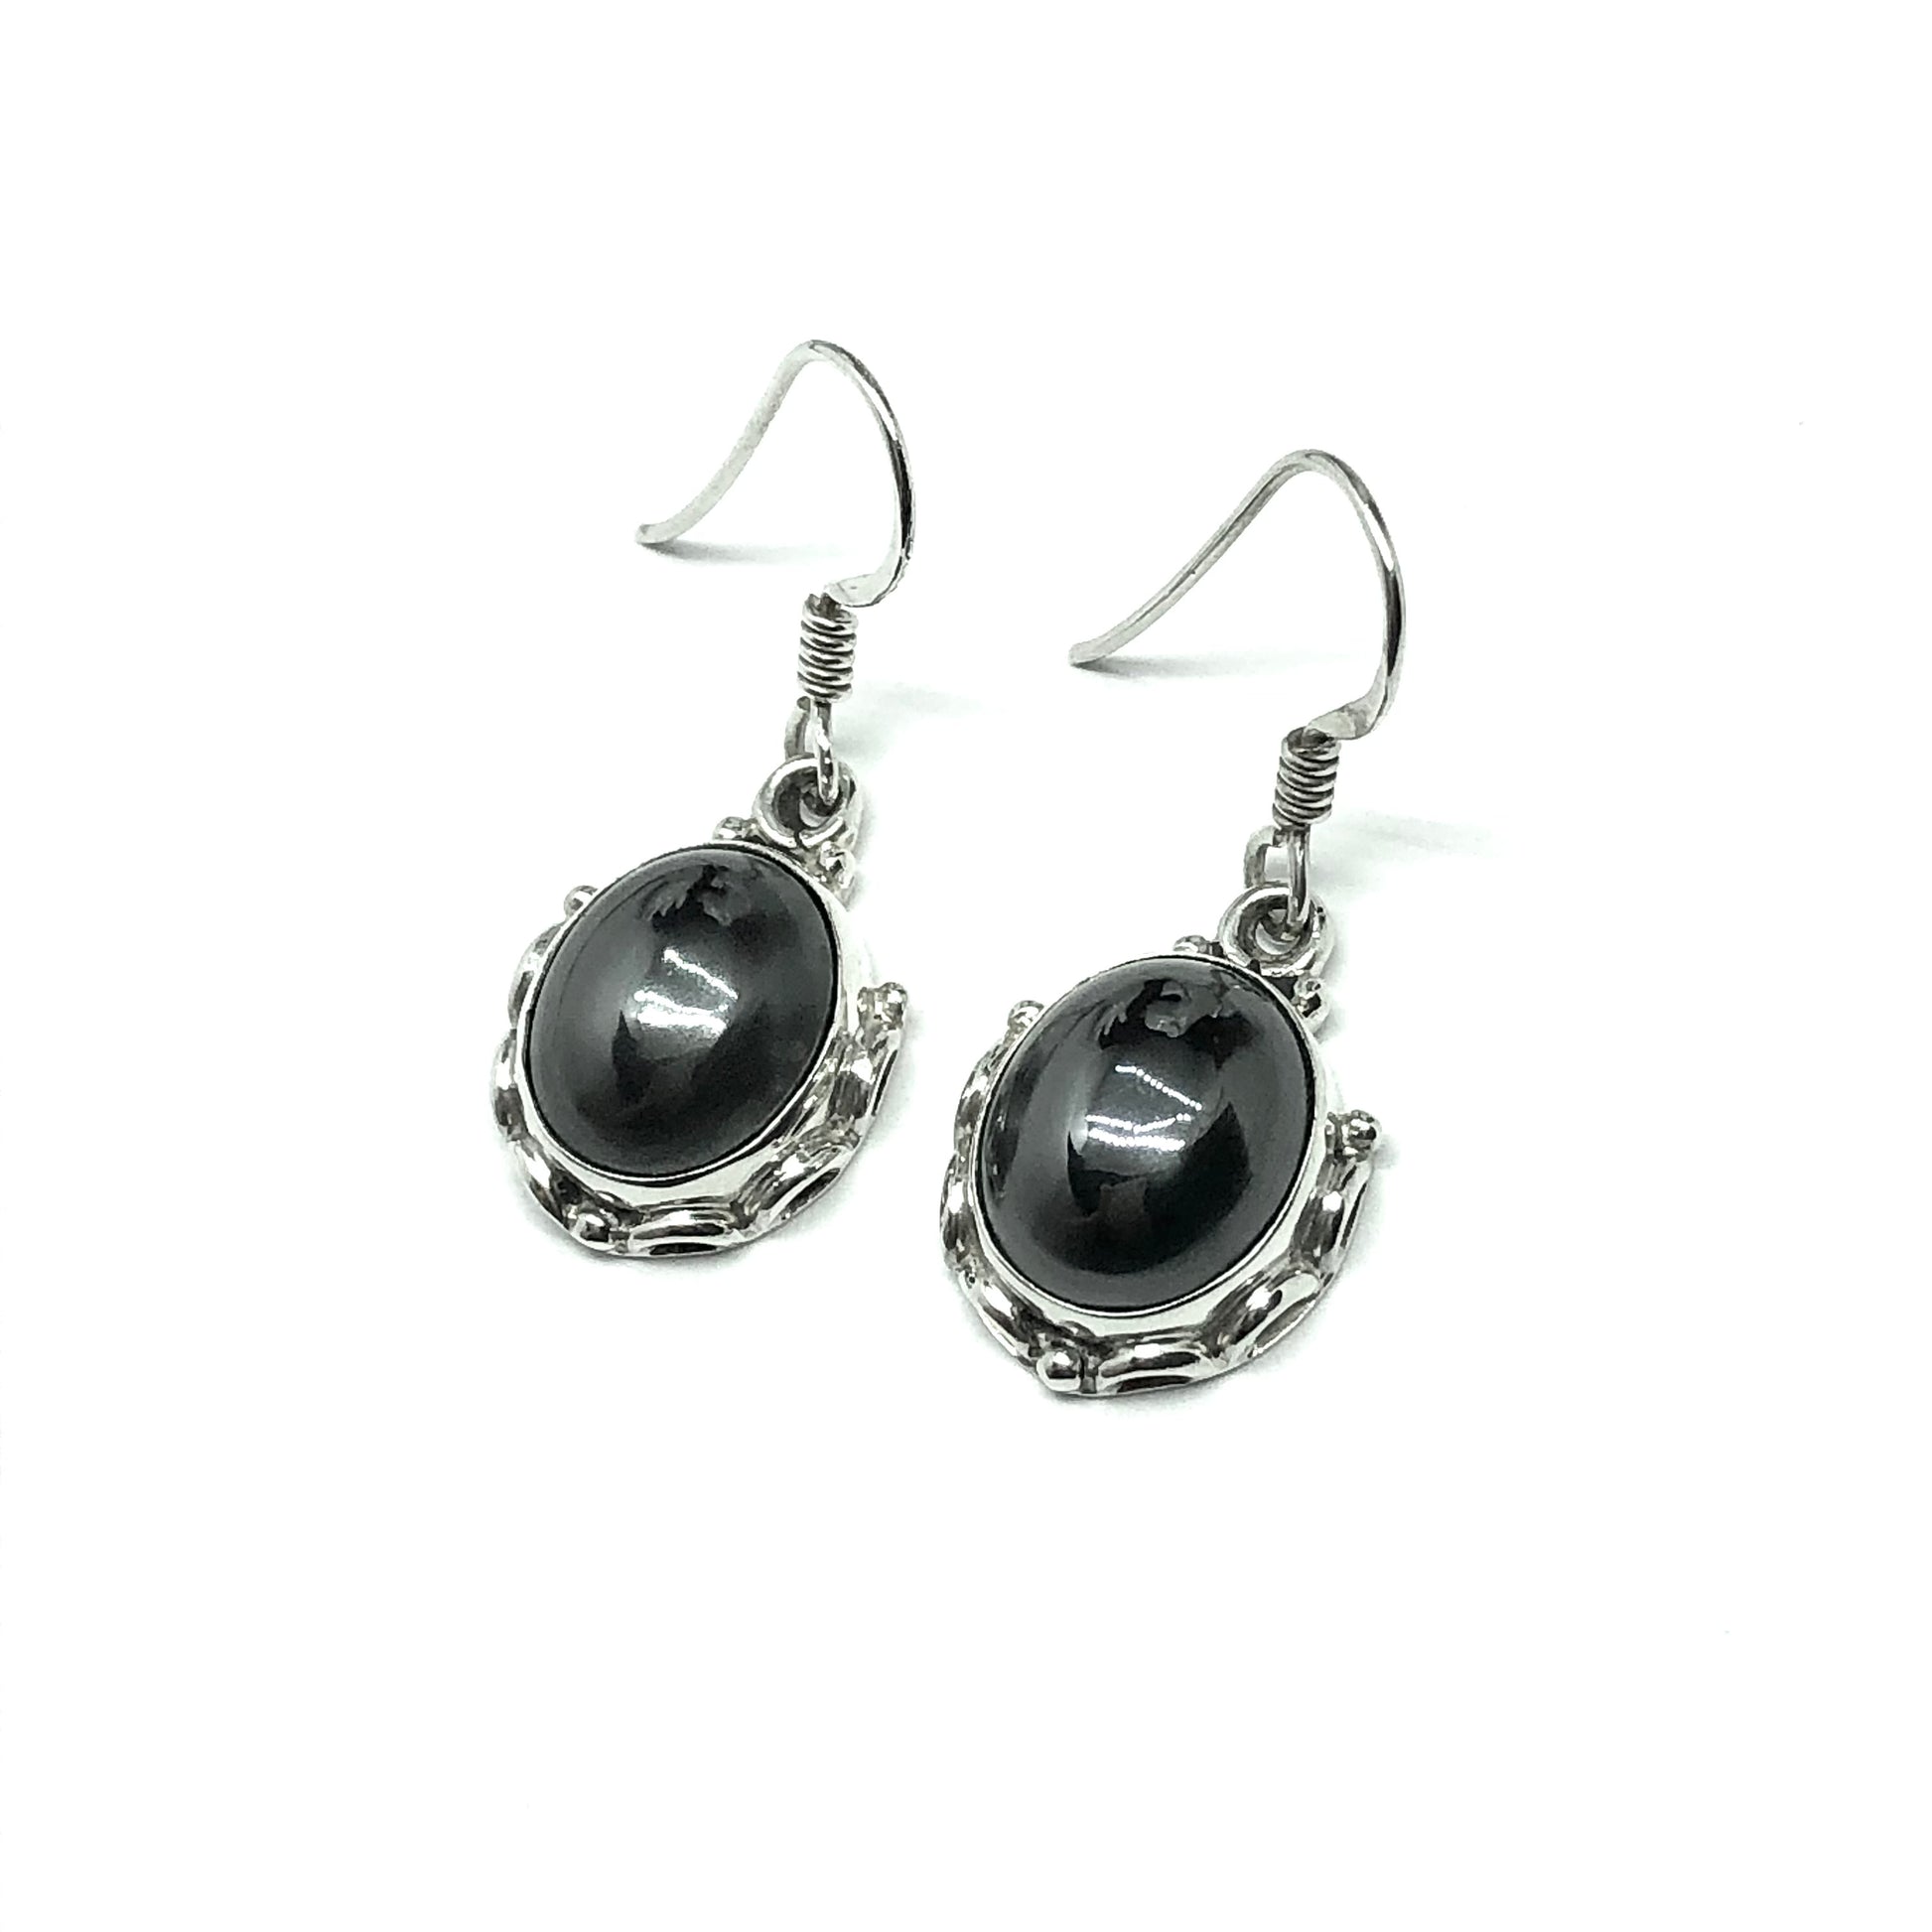 Jewelry - 925 Sterling Silver Black Metallic Sheen Hematite Stone Dangle Earrings - USA